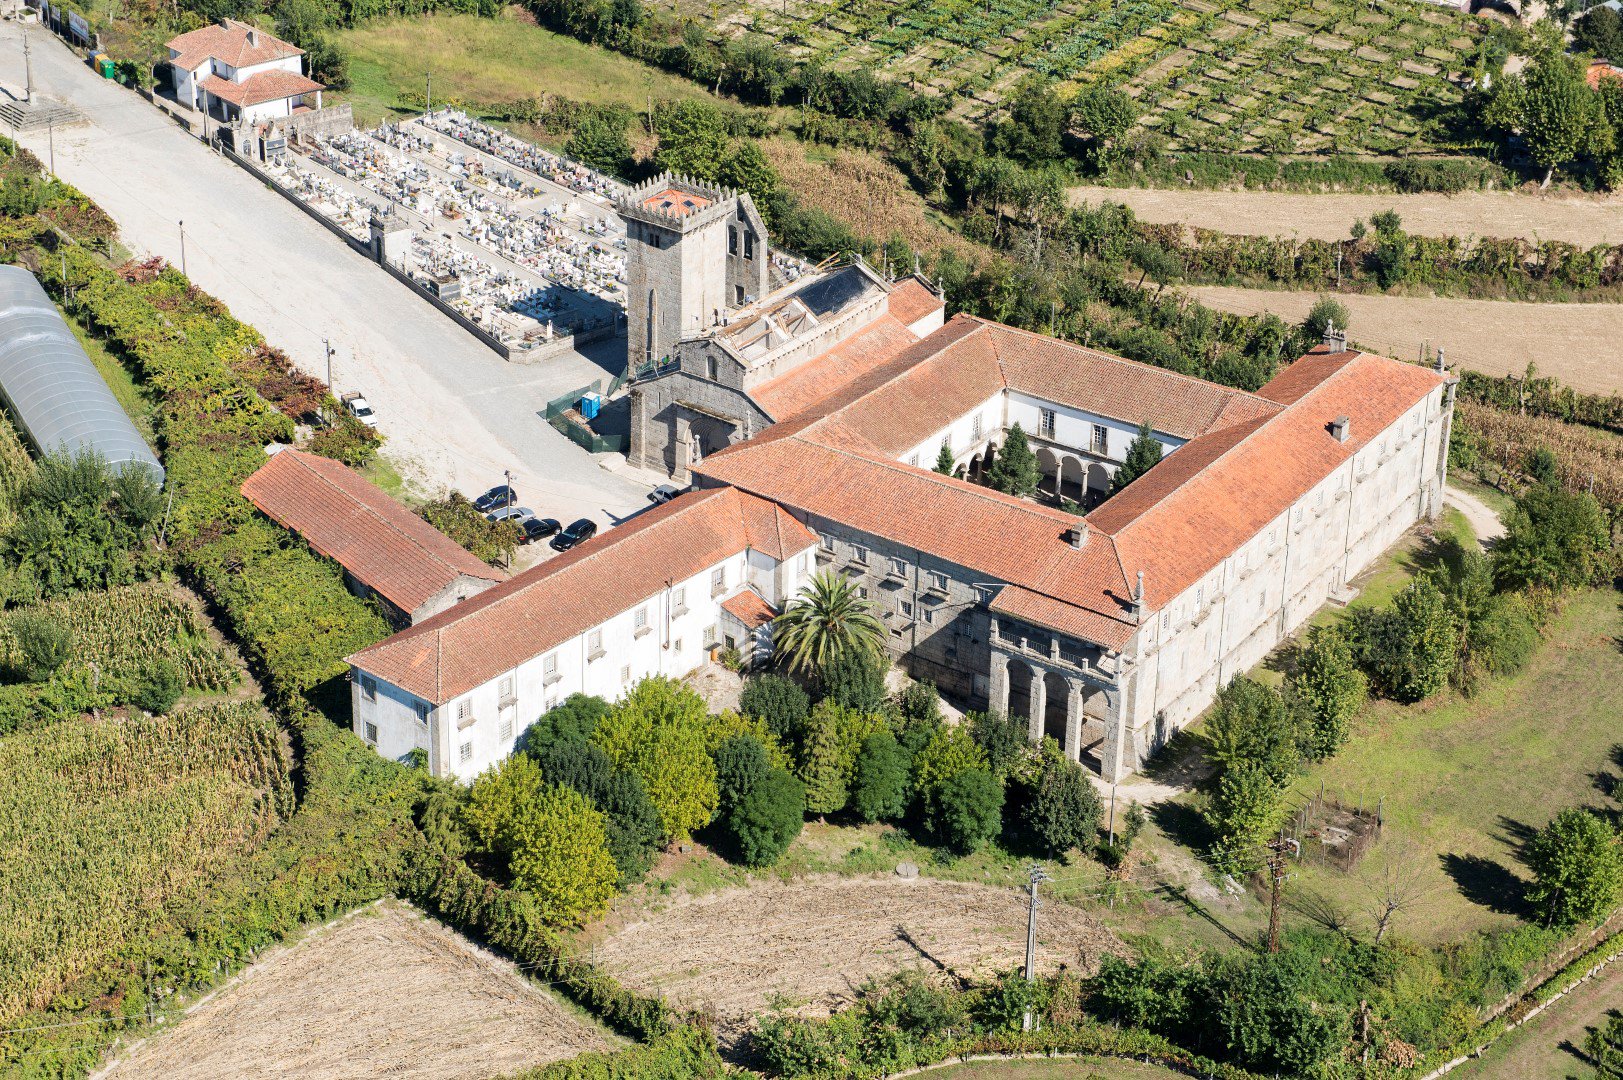 Monasterio de Travanca en concurso público para explotación turística